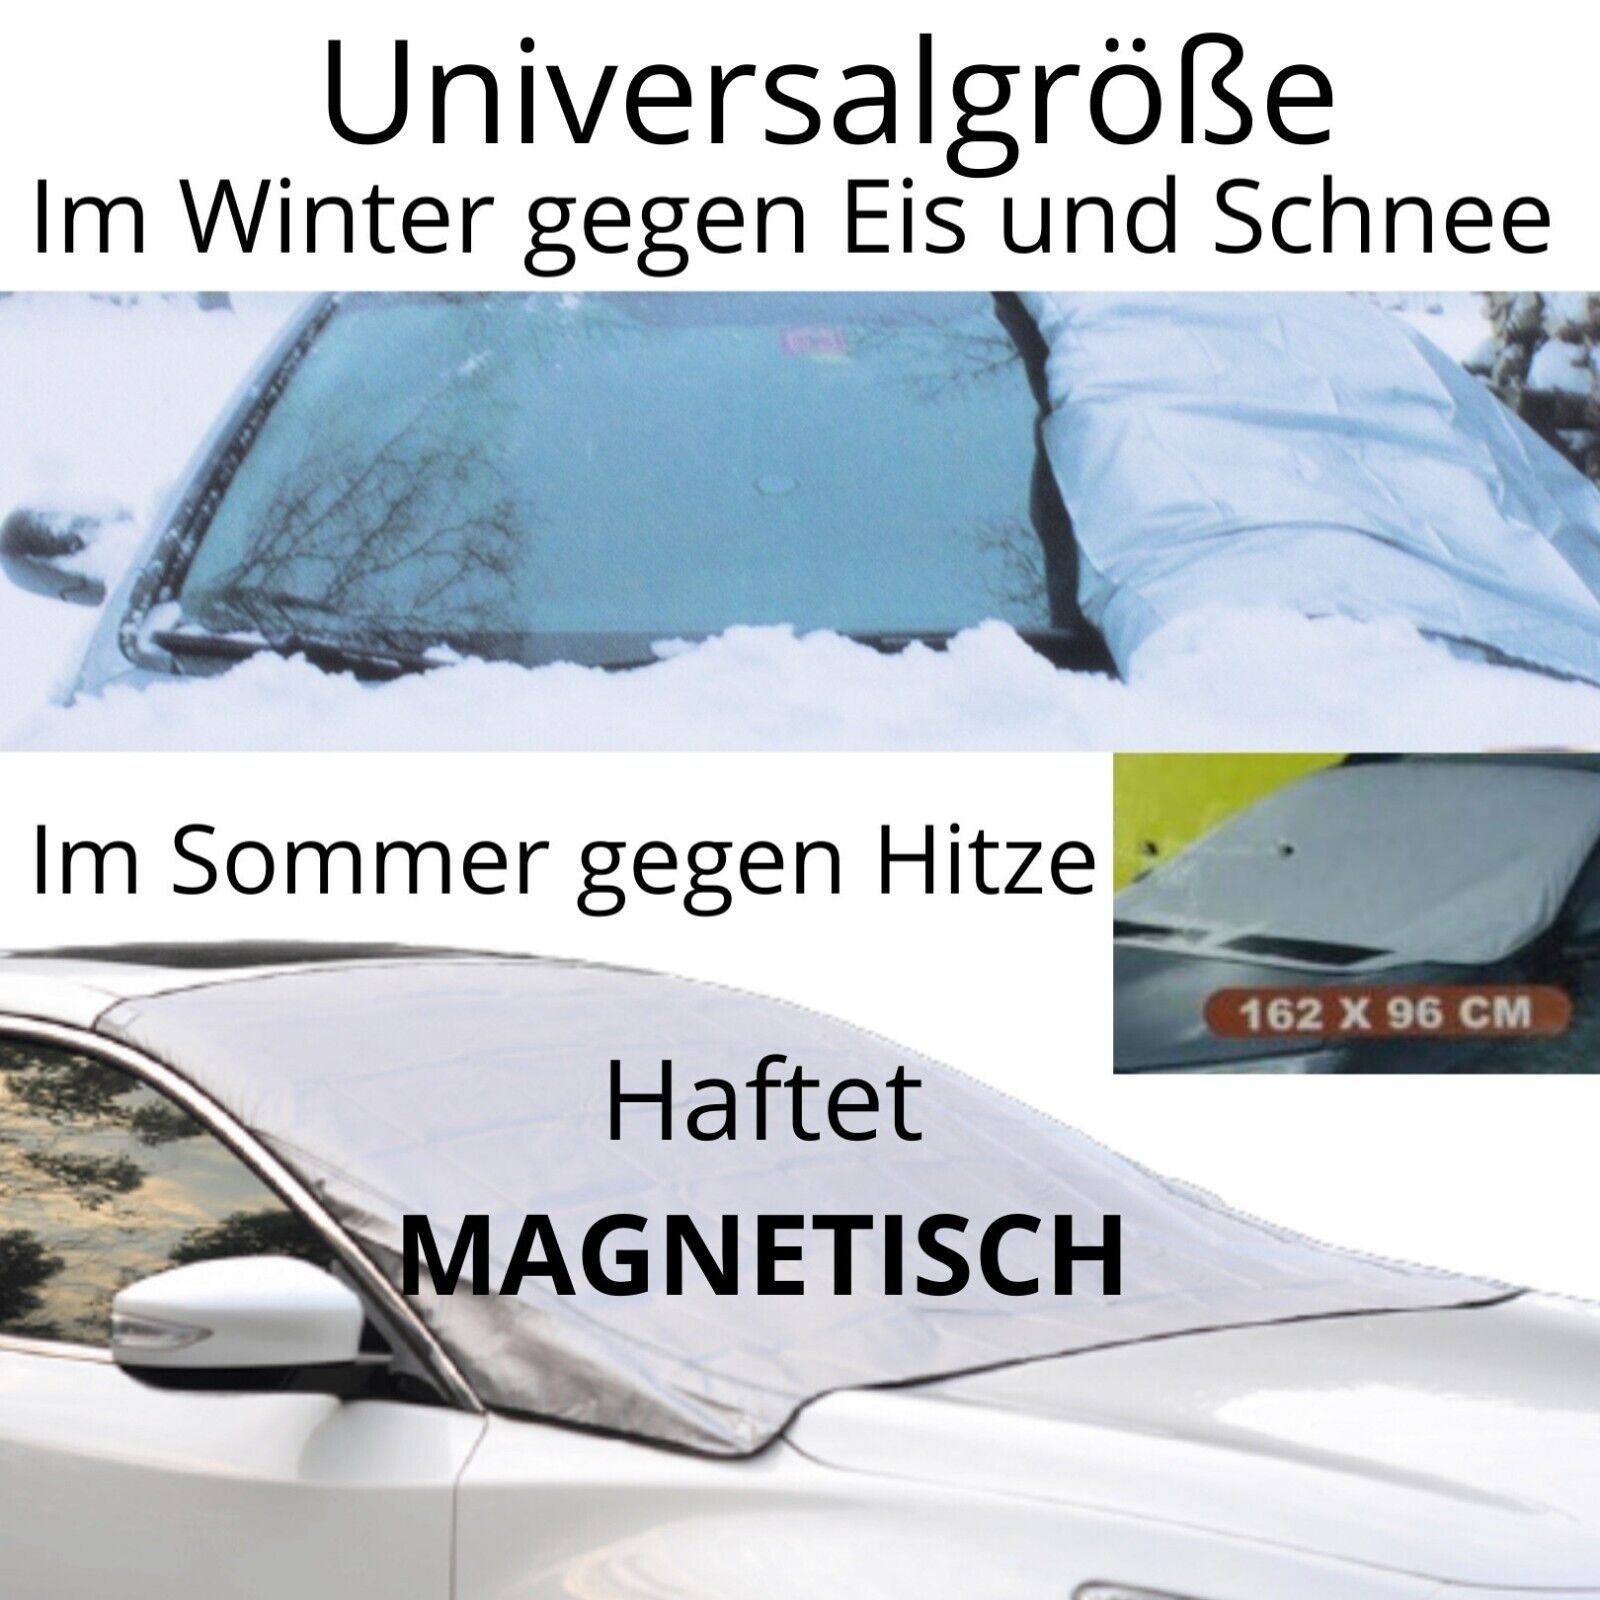 Kaufe Magnetische Windschutzscheibenabdeckung für Eis, Schnee